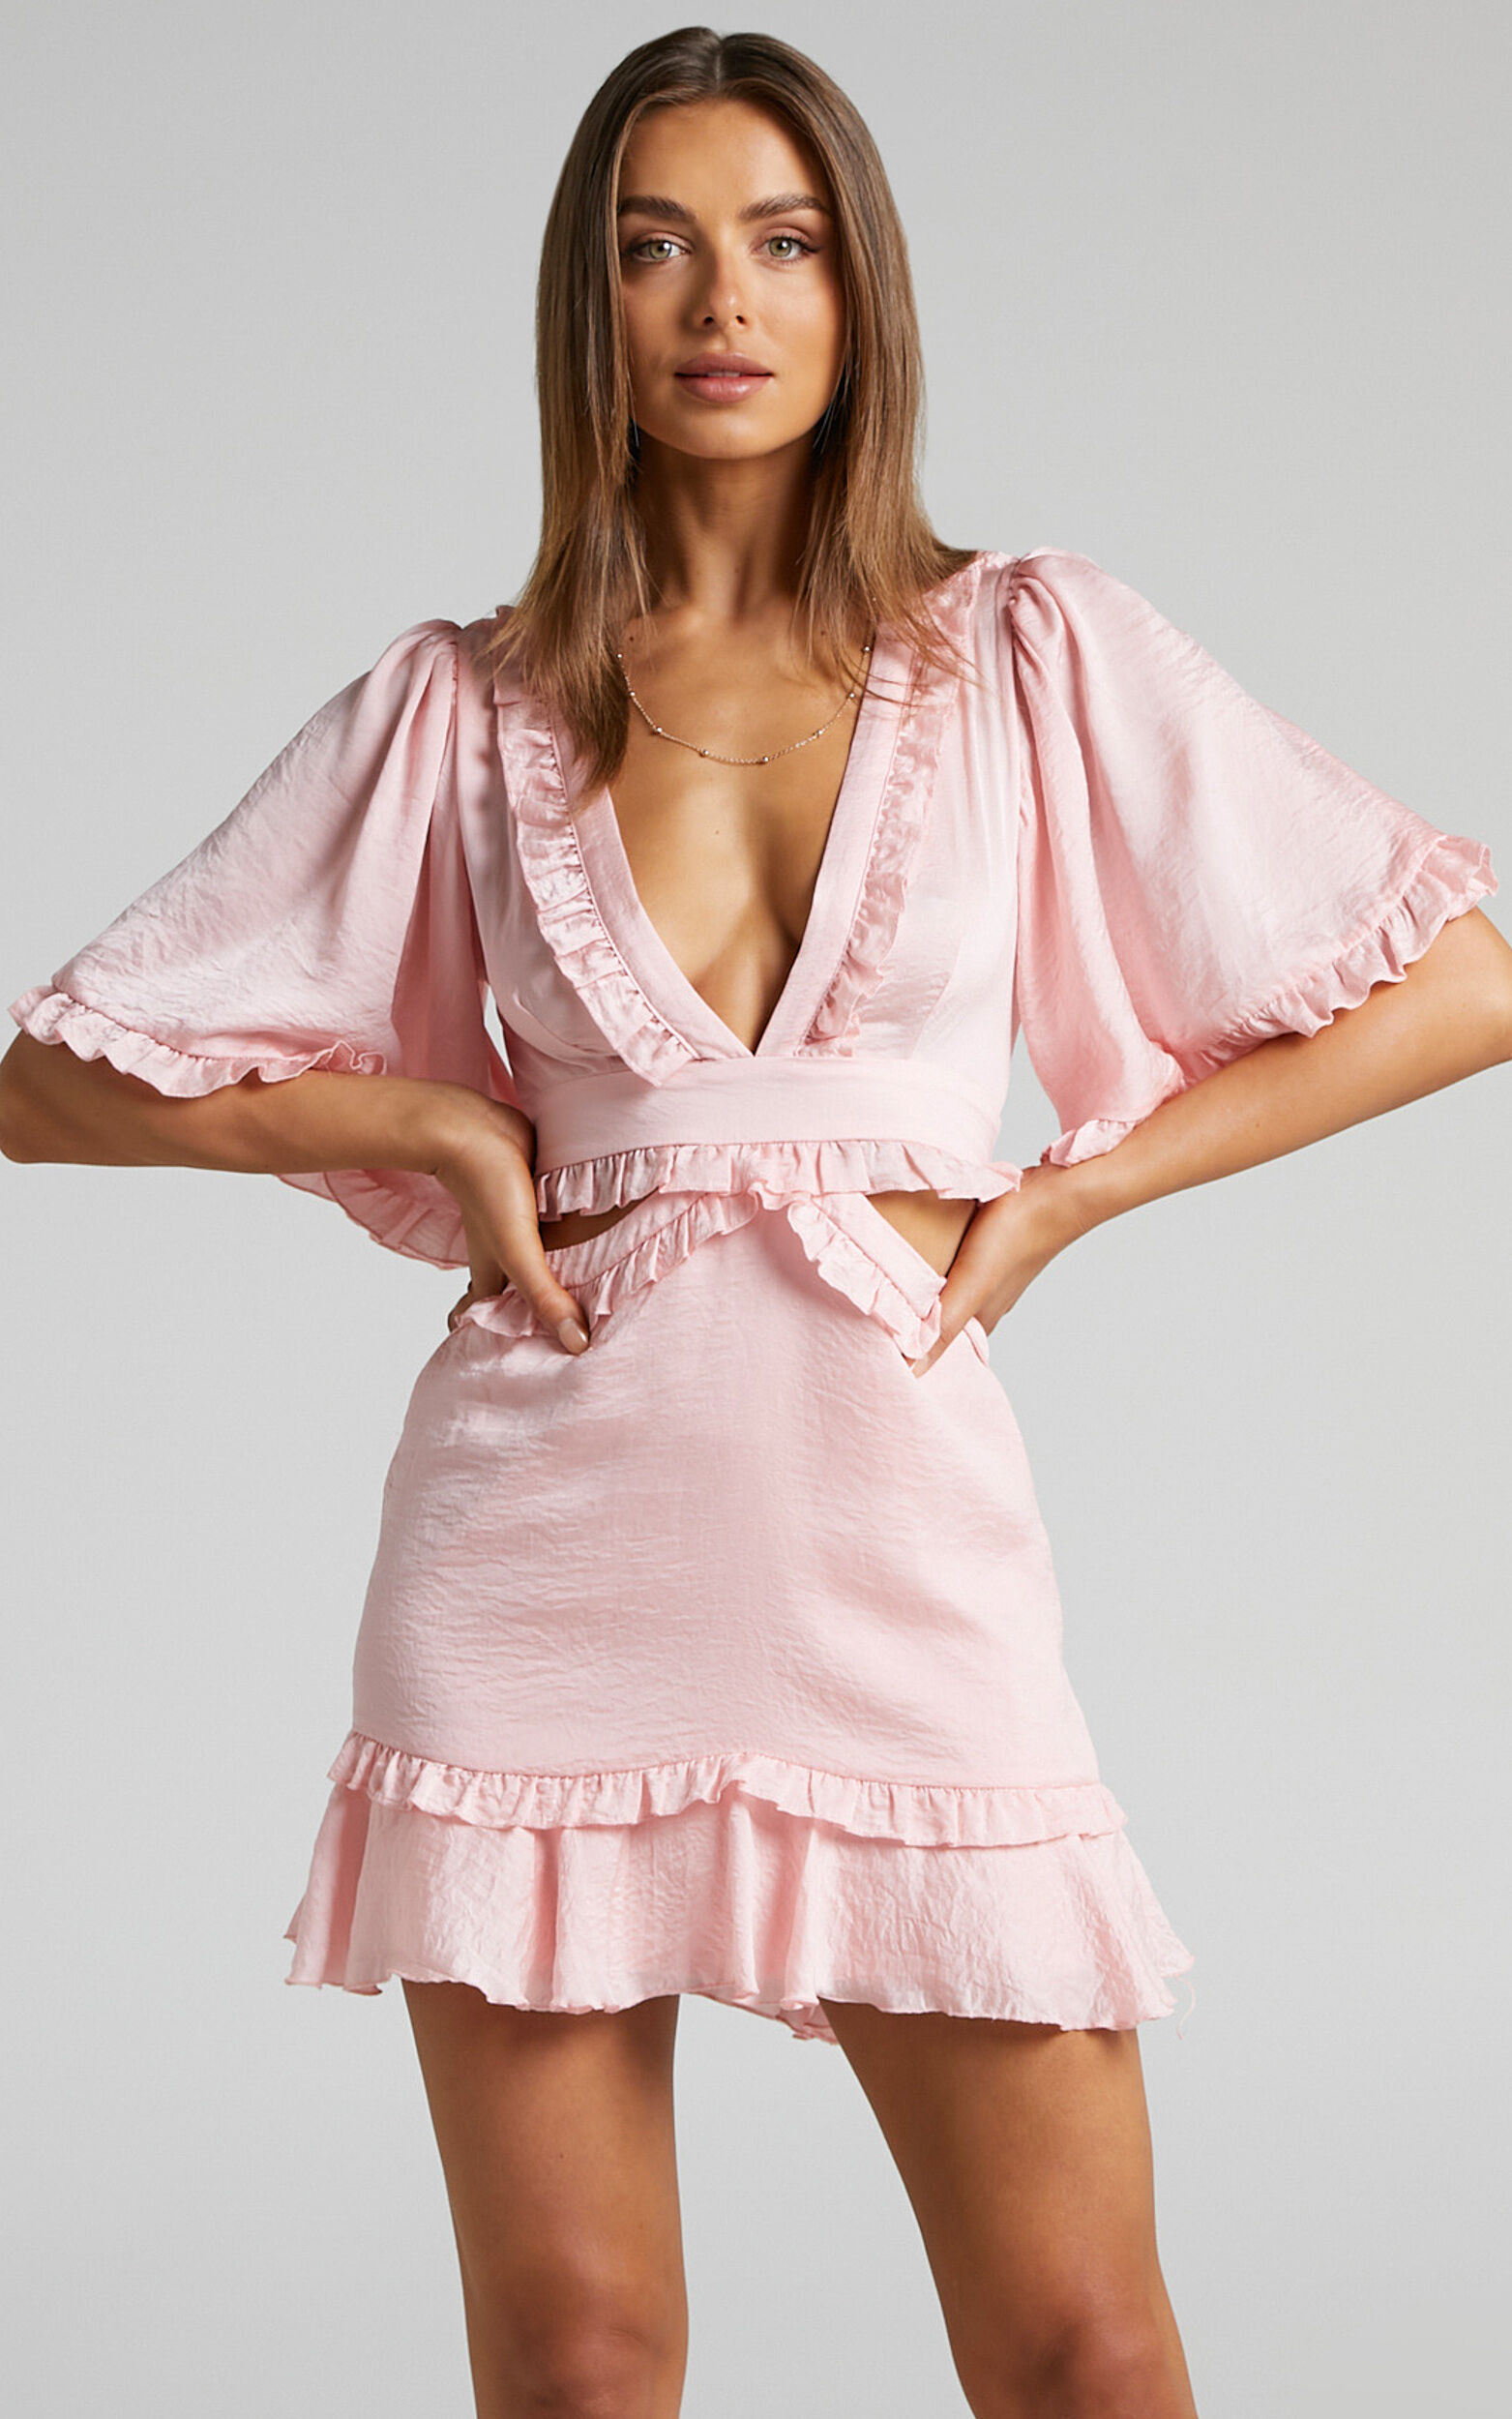 Maricris Mini Dress - Open Back Bell Sleeve Frill Dress in Dusty Pink - 06, PNK1